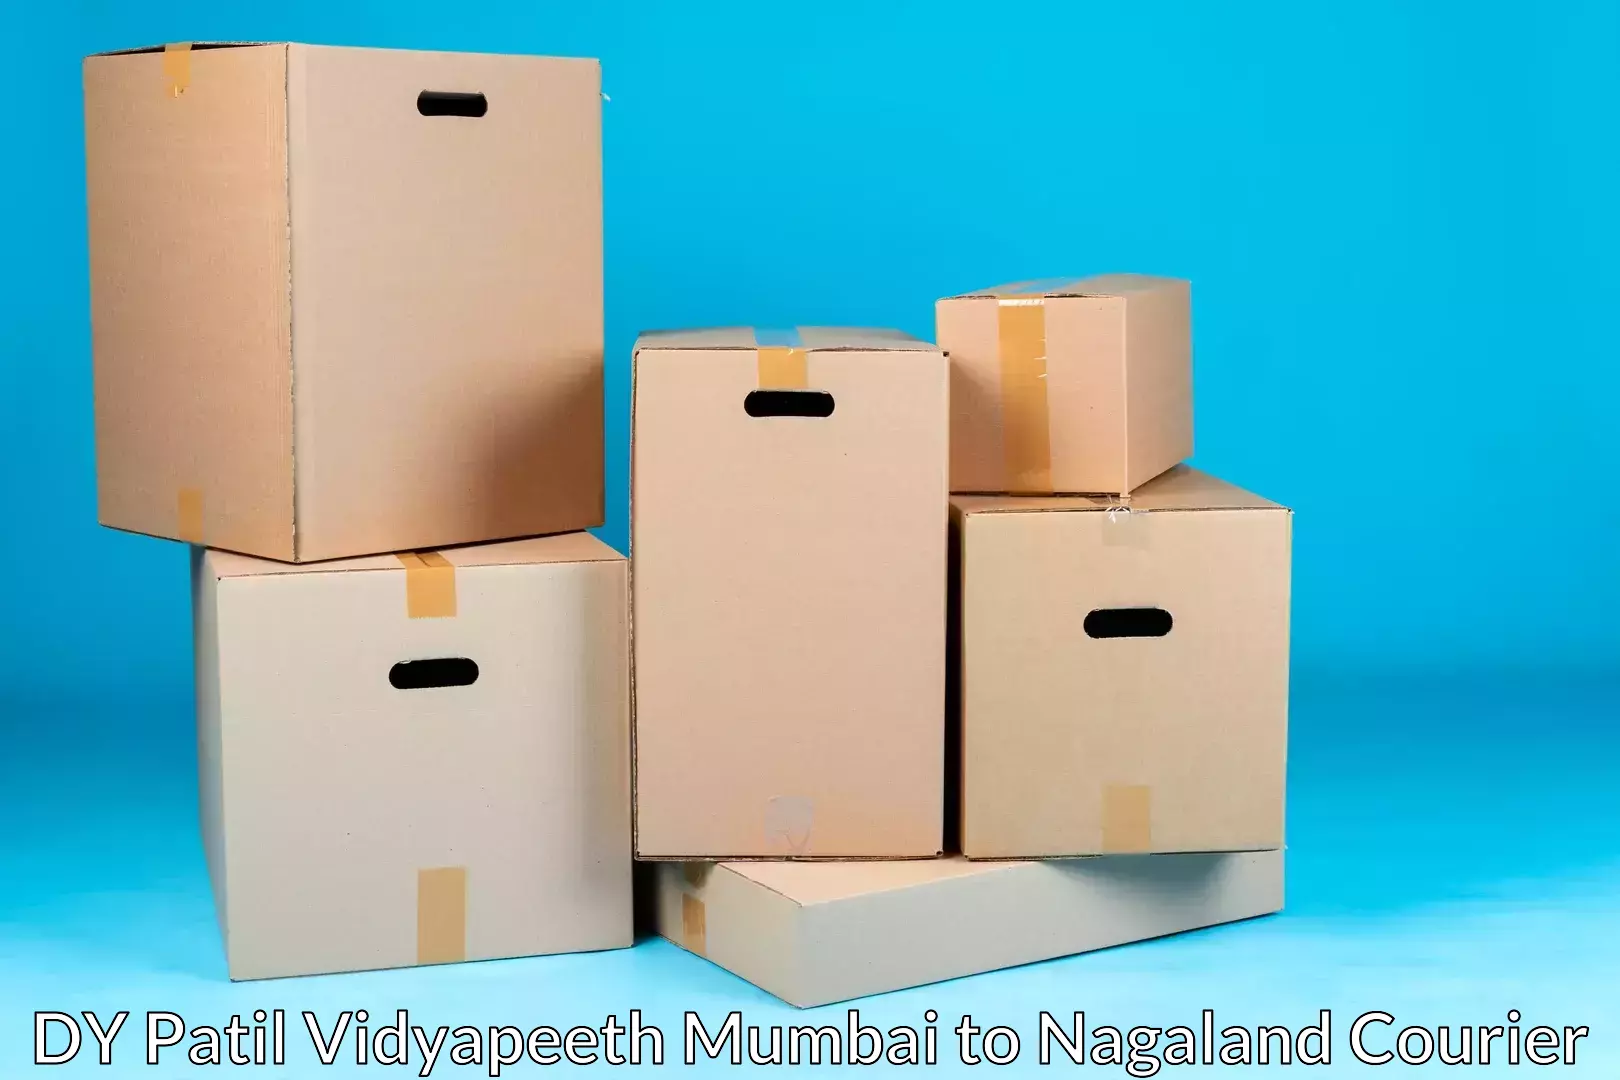 Nationwide furniture movers DY Patil Vidyapeeth Mumbai to Mokokchung